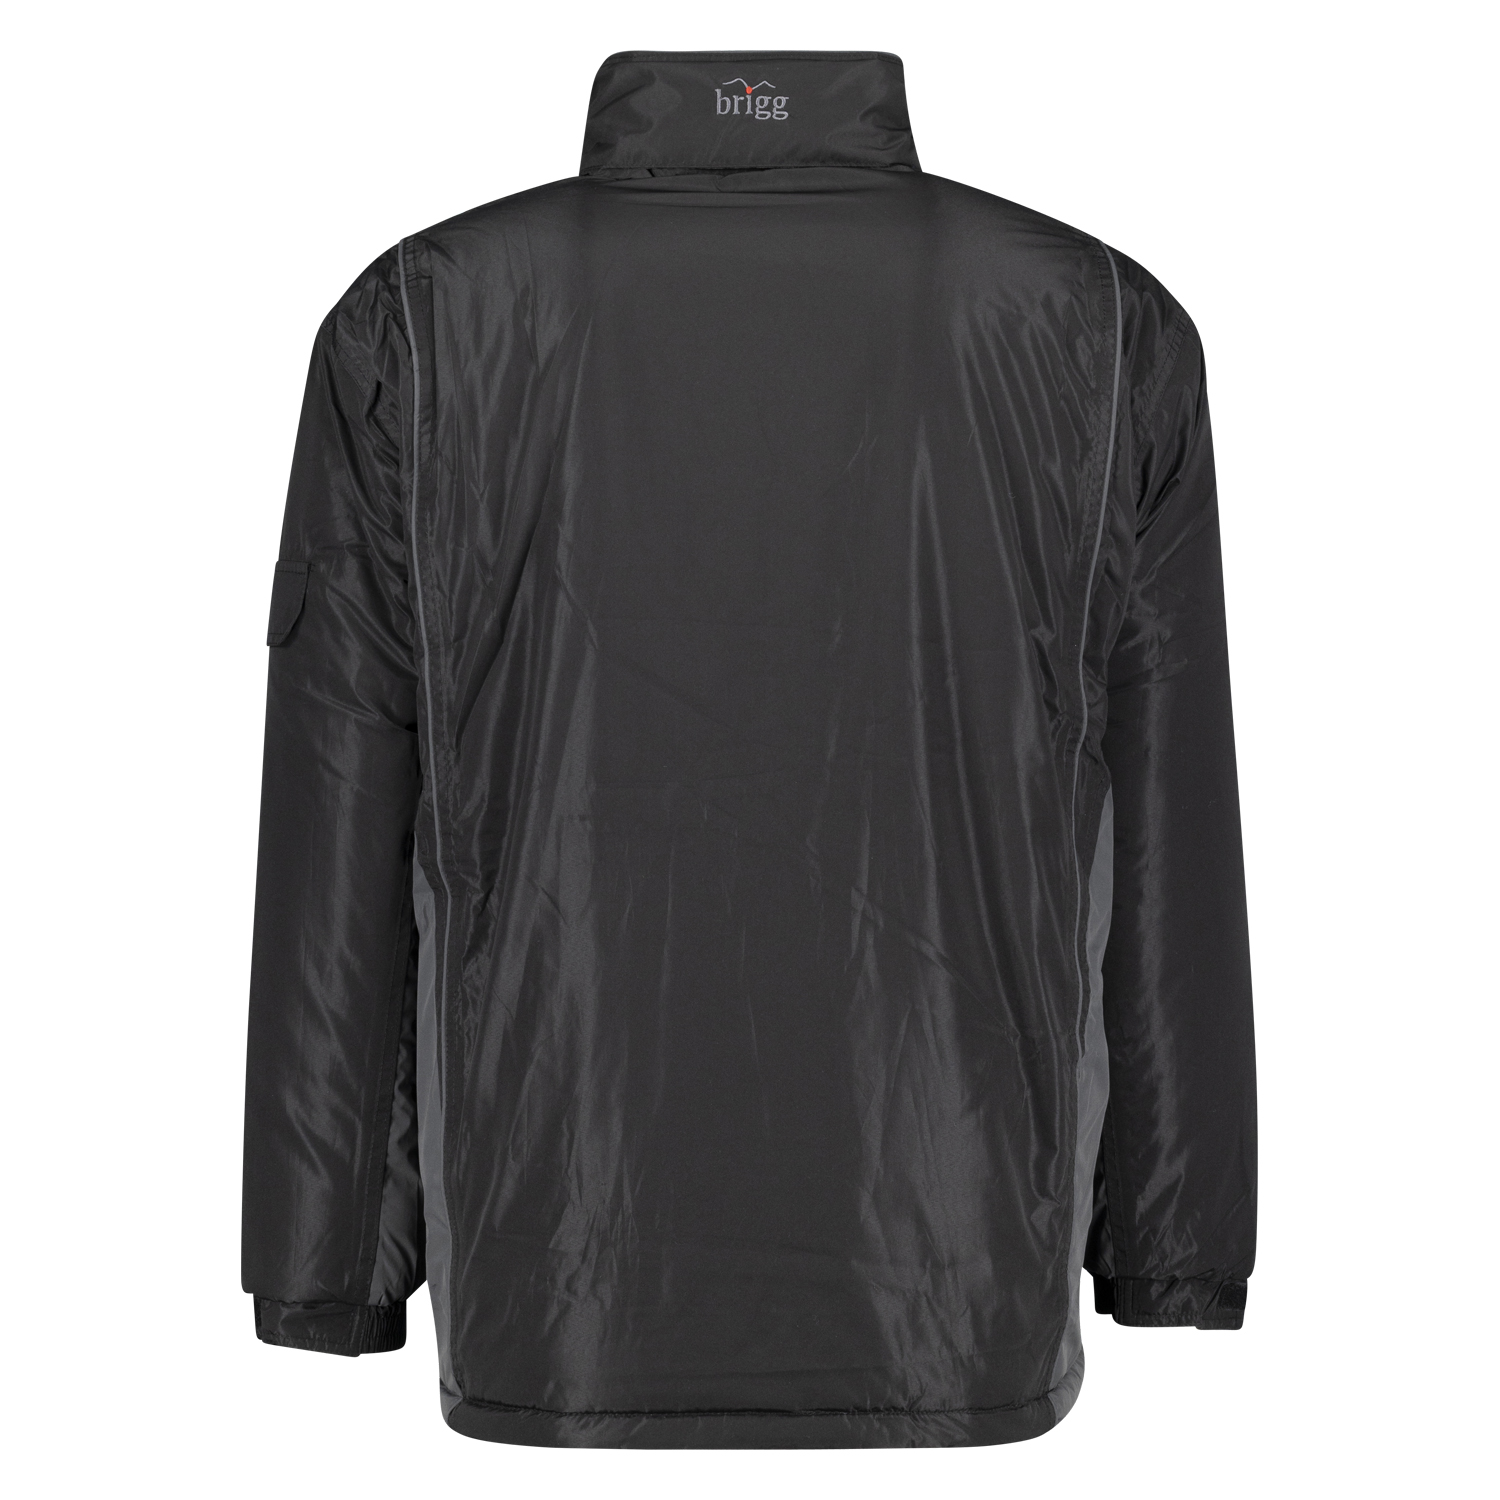 Wasserdichte Jacke in Übergrößen, schwarz-grau von Brigg bis 14XL